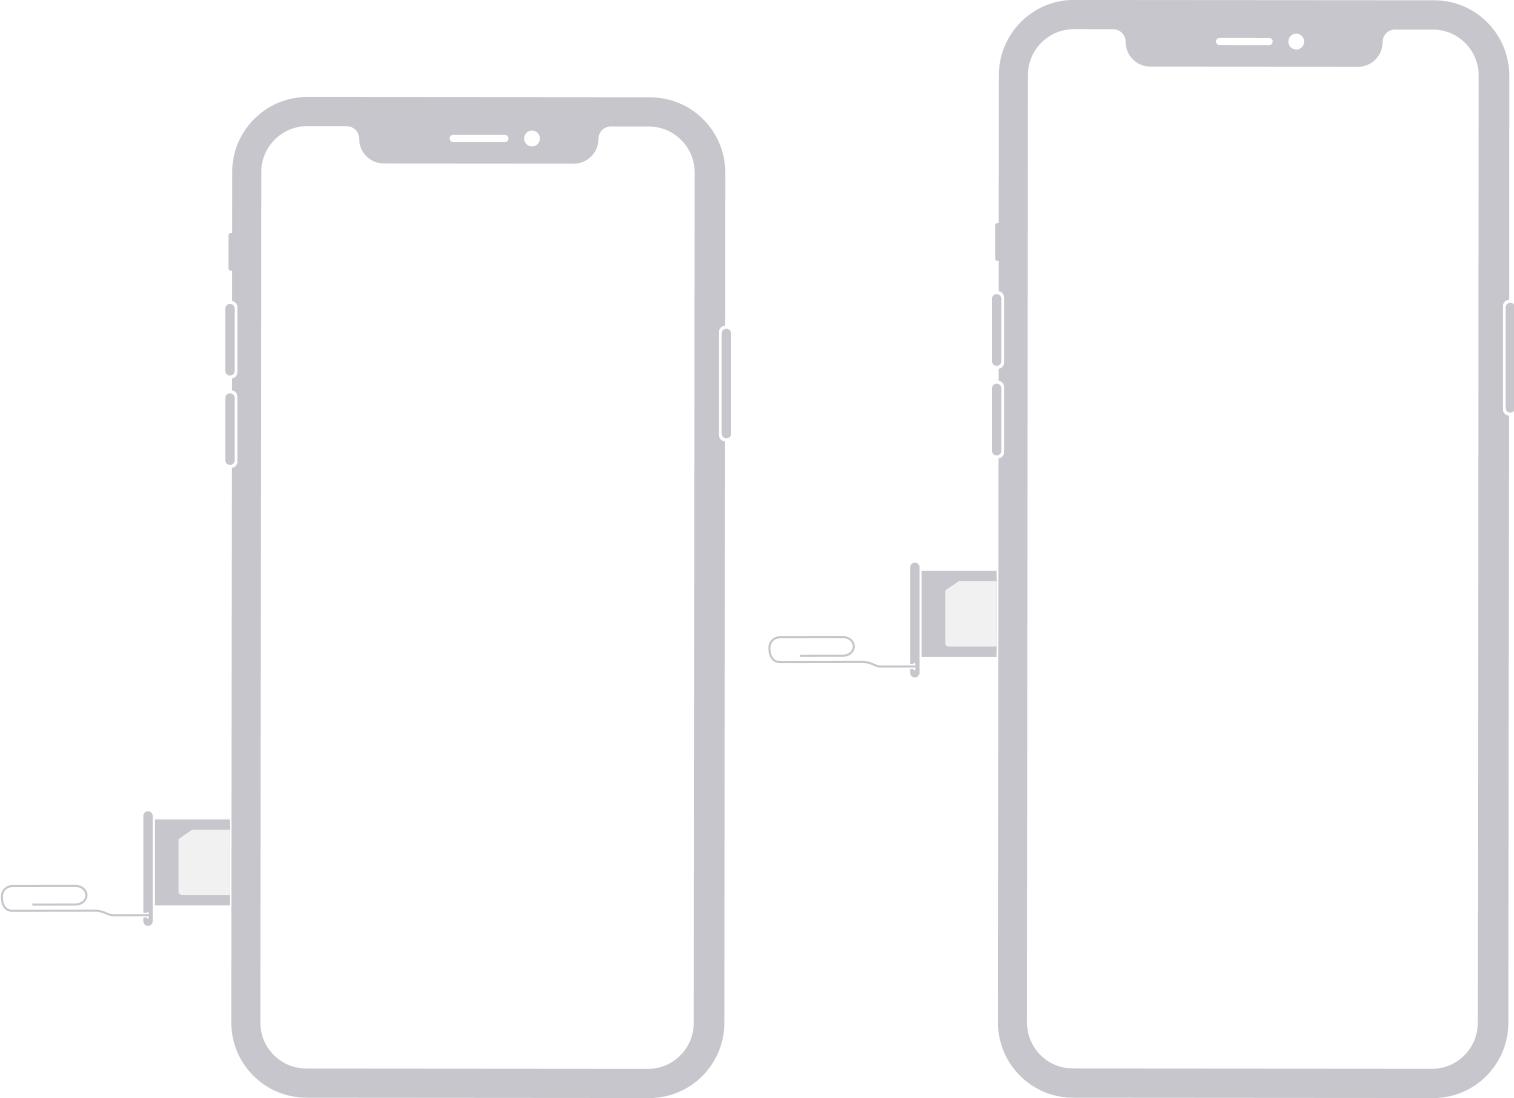 Hình ảnh minh họa SIM nằm ở cạnh bên trái của iPhone